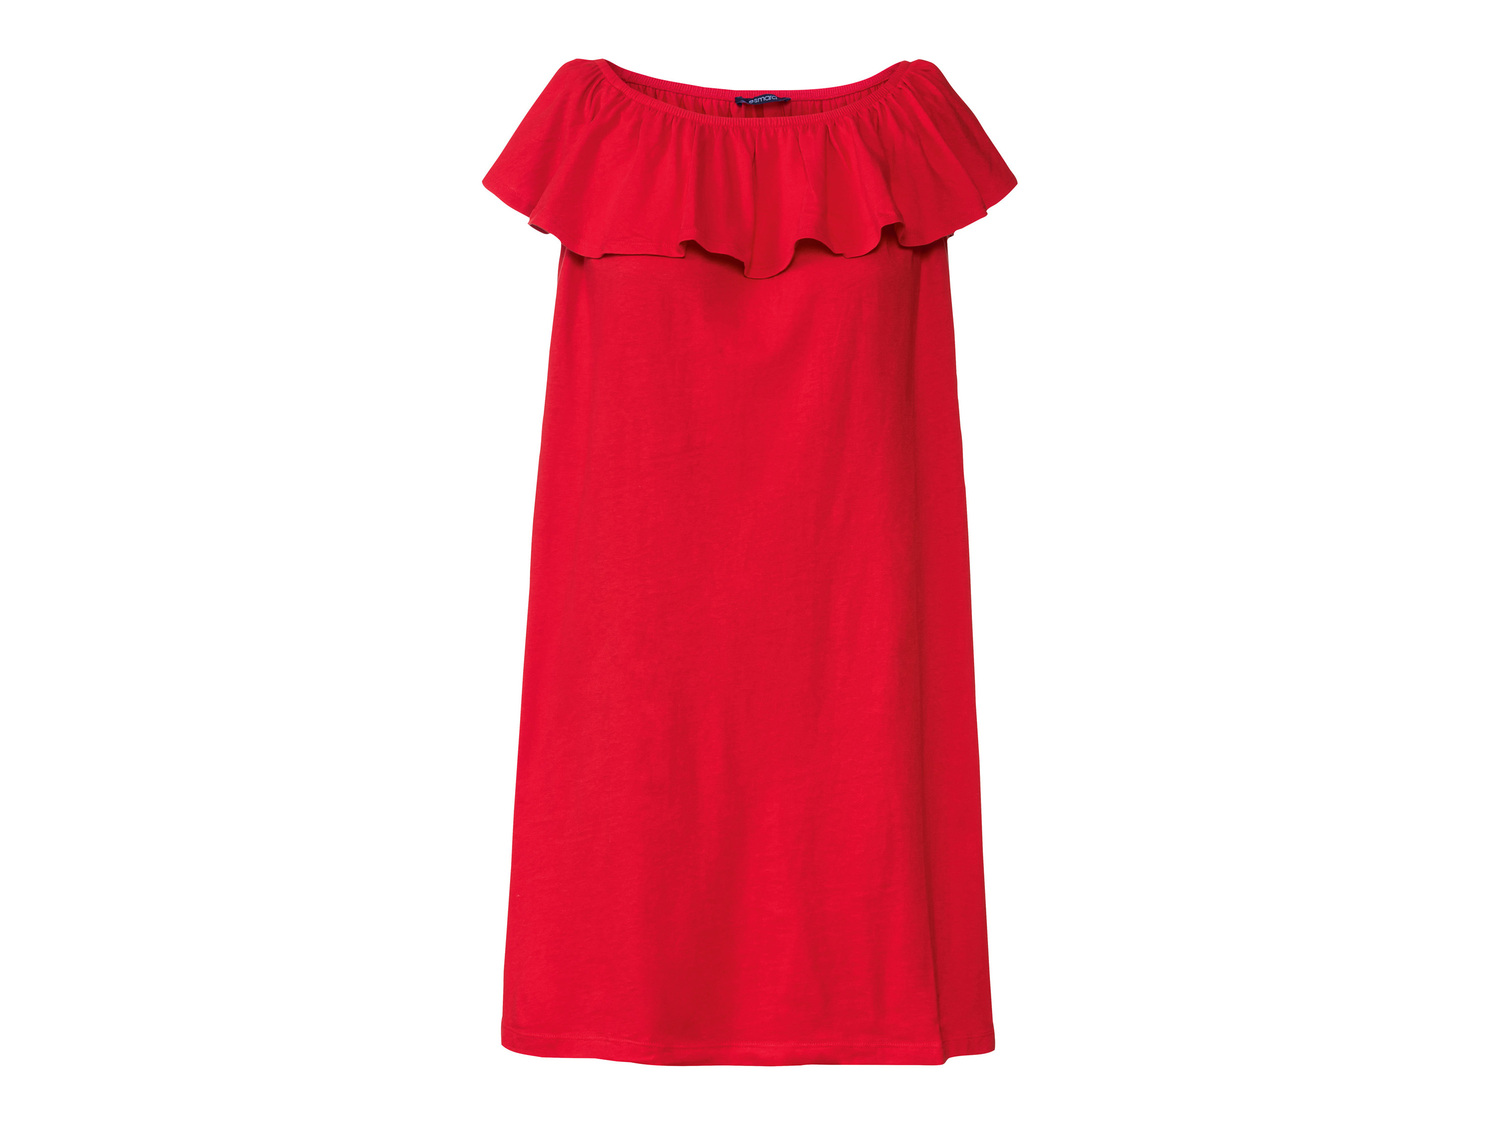 Vestito corto da donna Esmara, prezzo 8.99 &#8364; 
Misure: S-L 
- Puro cotone
Caratteristiche

- ...